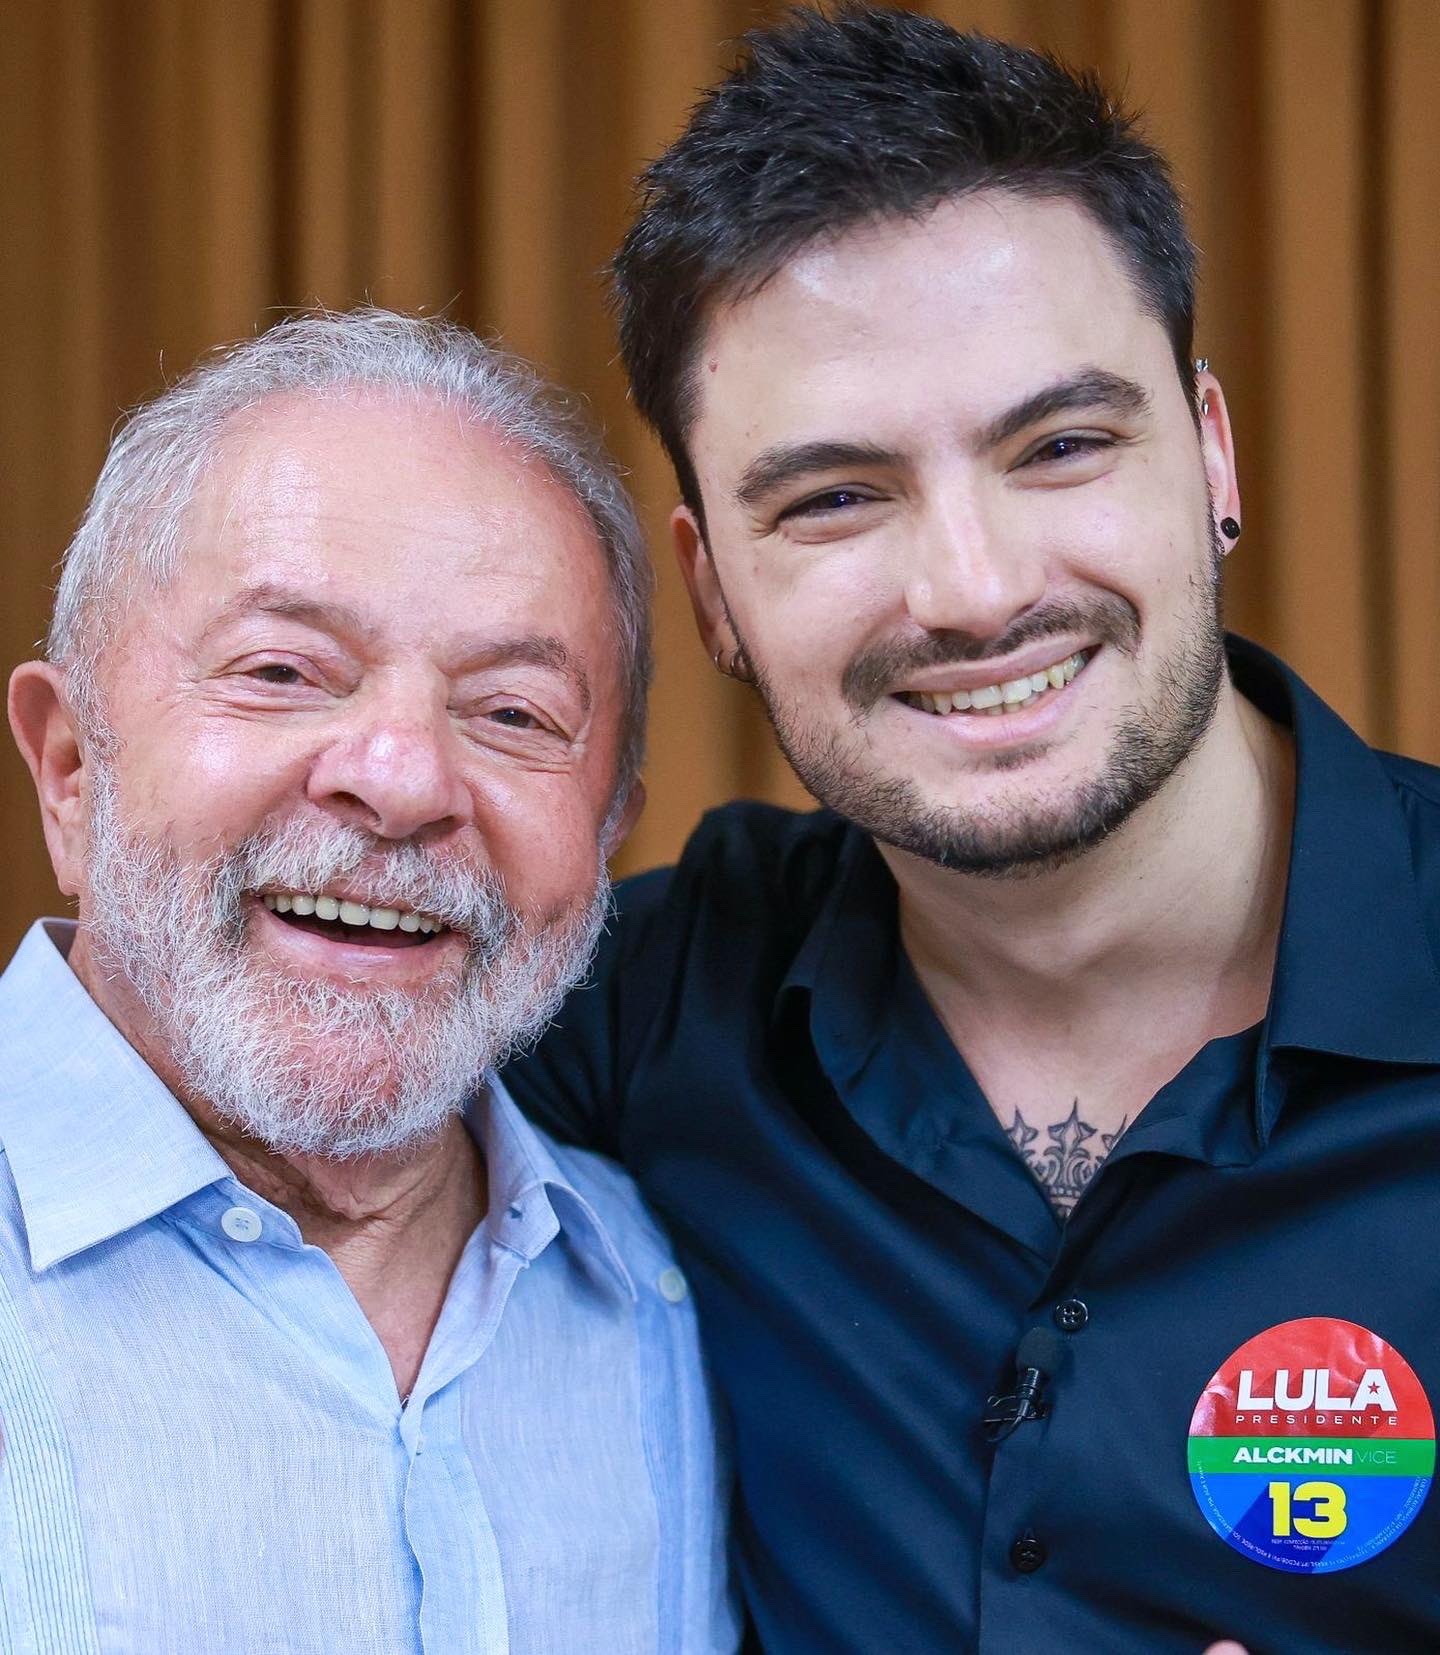 Felipe Neto e Lula se encontram no Rio de Janeiro — Foto: Ricardo Stuckert/Divulgação